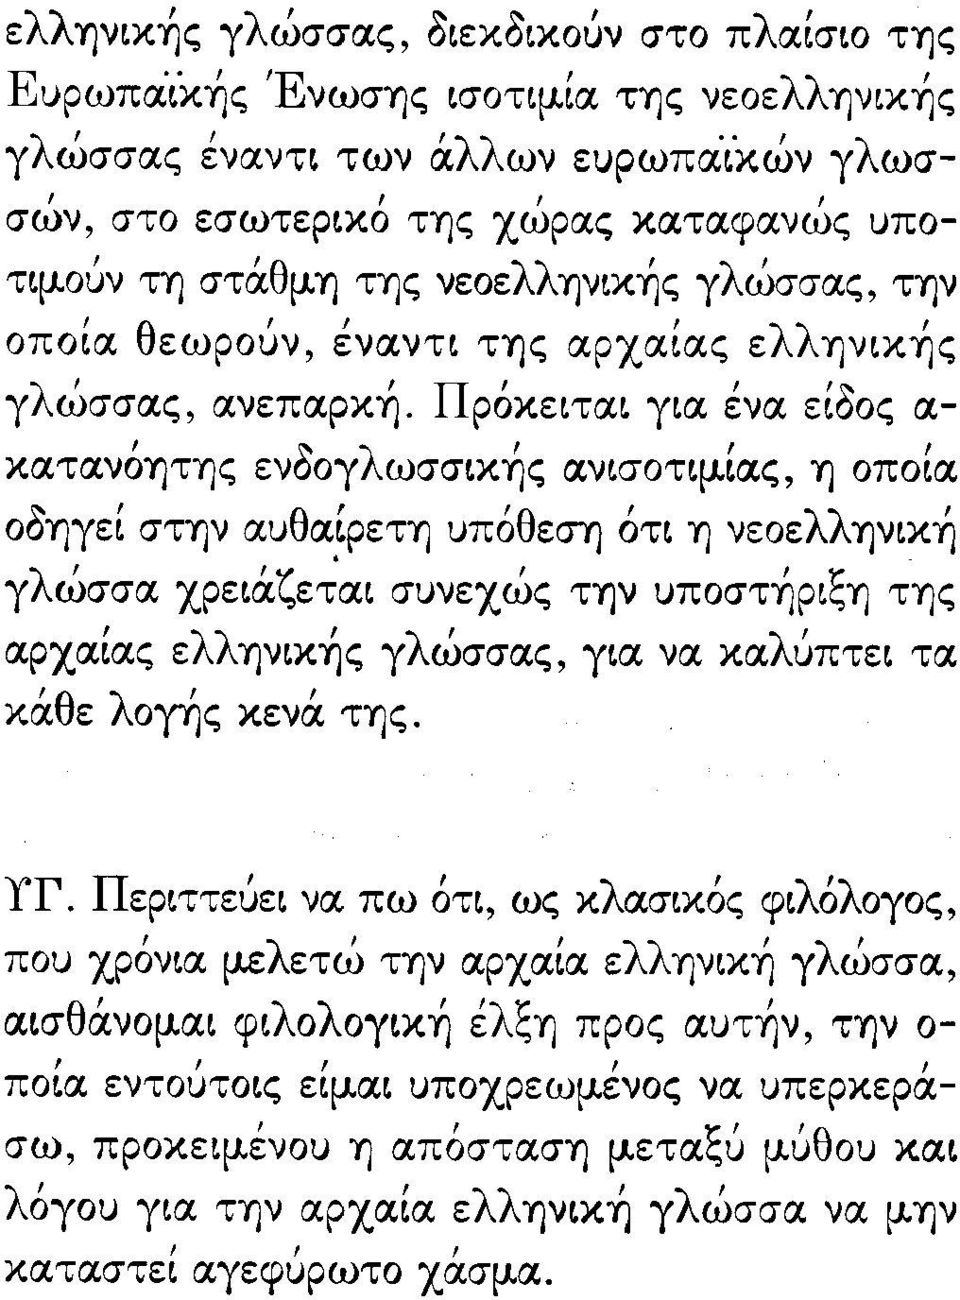 ροκειται για ενα "~ ειοος α- κατανόητης ενδογλωσσικής ανισοτιμιας, η οποία οδηγει στην αυθαιρετη υπόθεση ότι η νεοελληνική γλώσσα χρειάζε~αι συνεχώς την υποστήριξη της αρχαιας ελληνικής γλώσσας, για